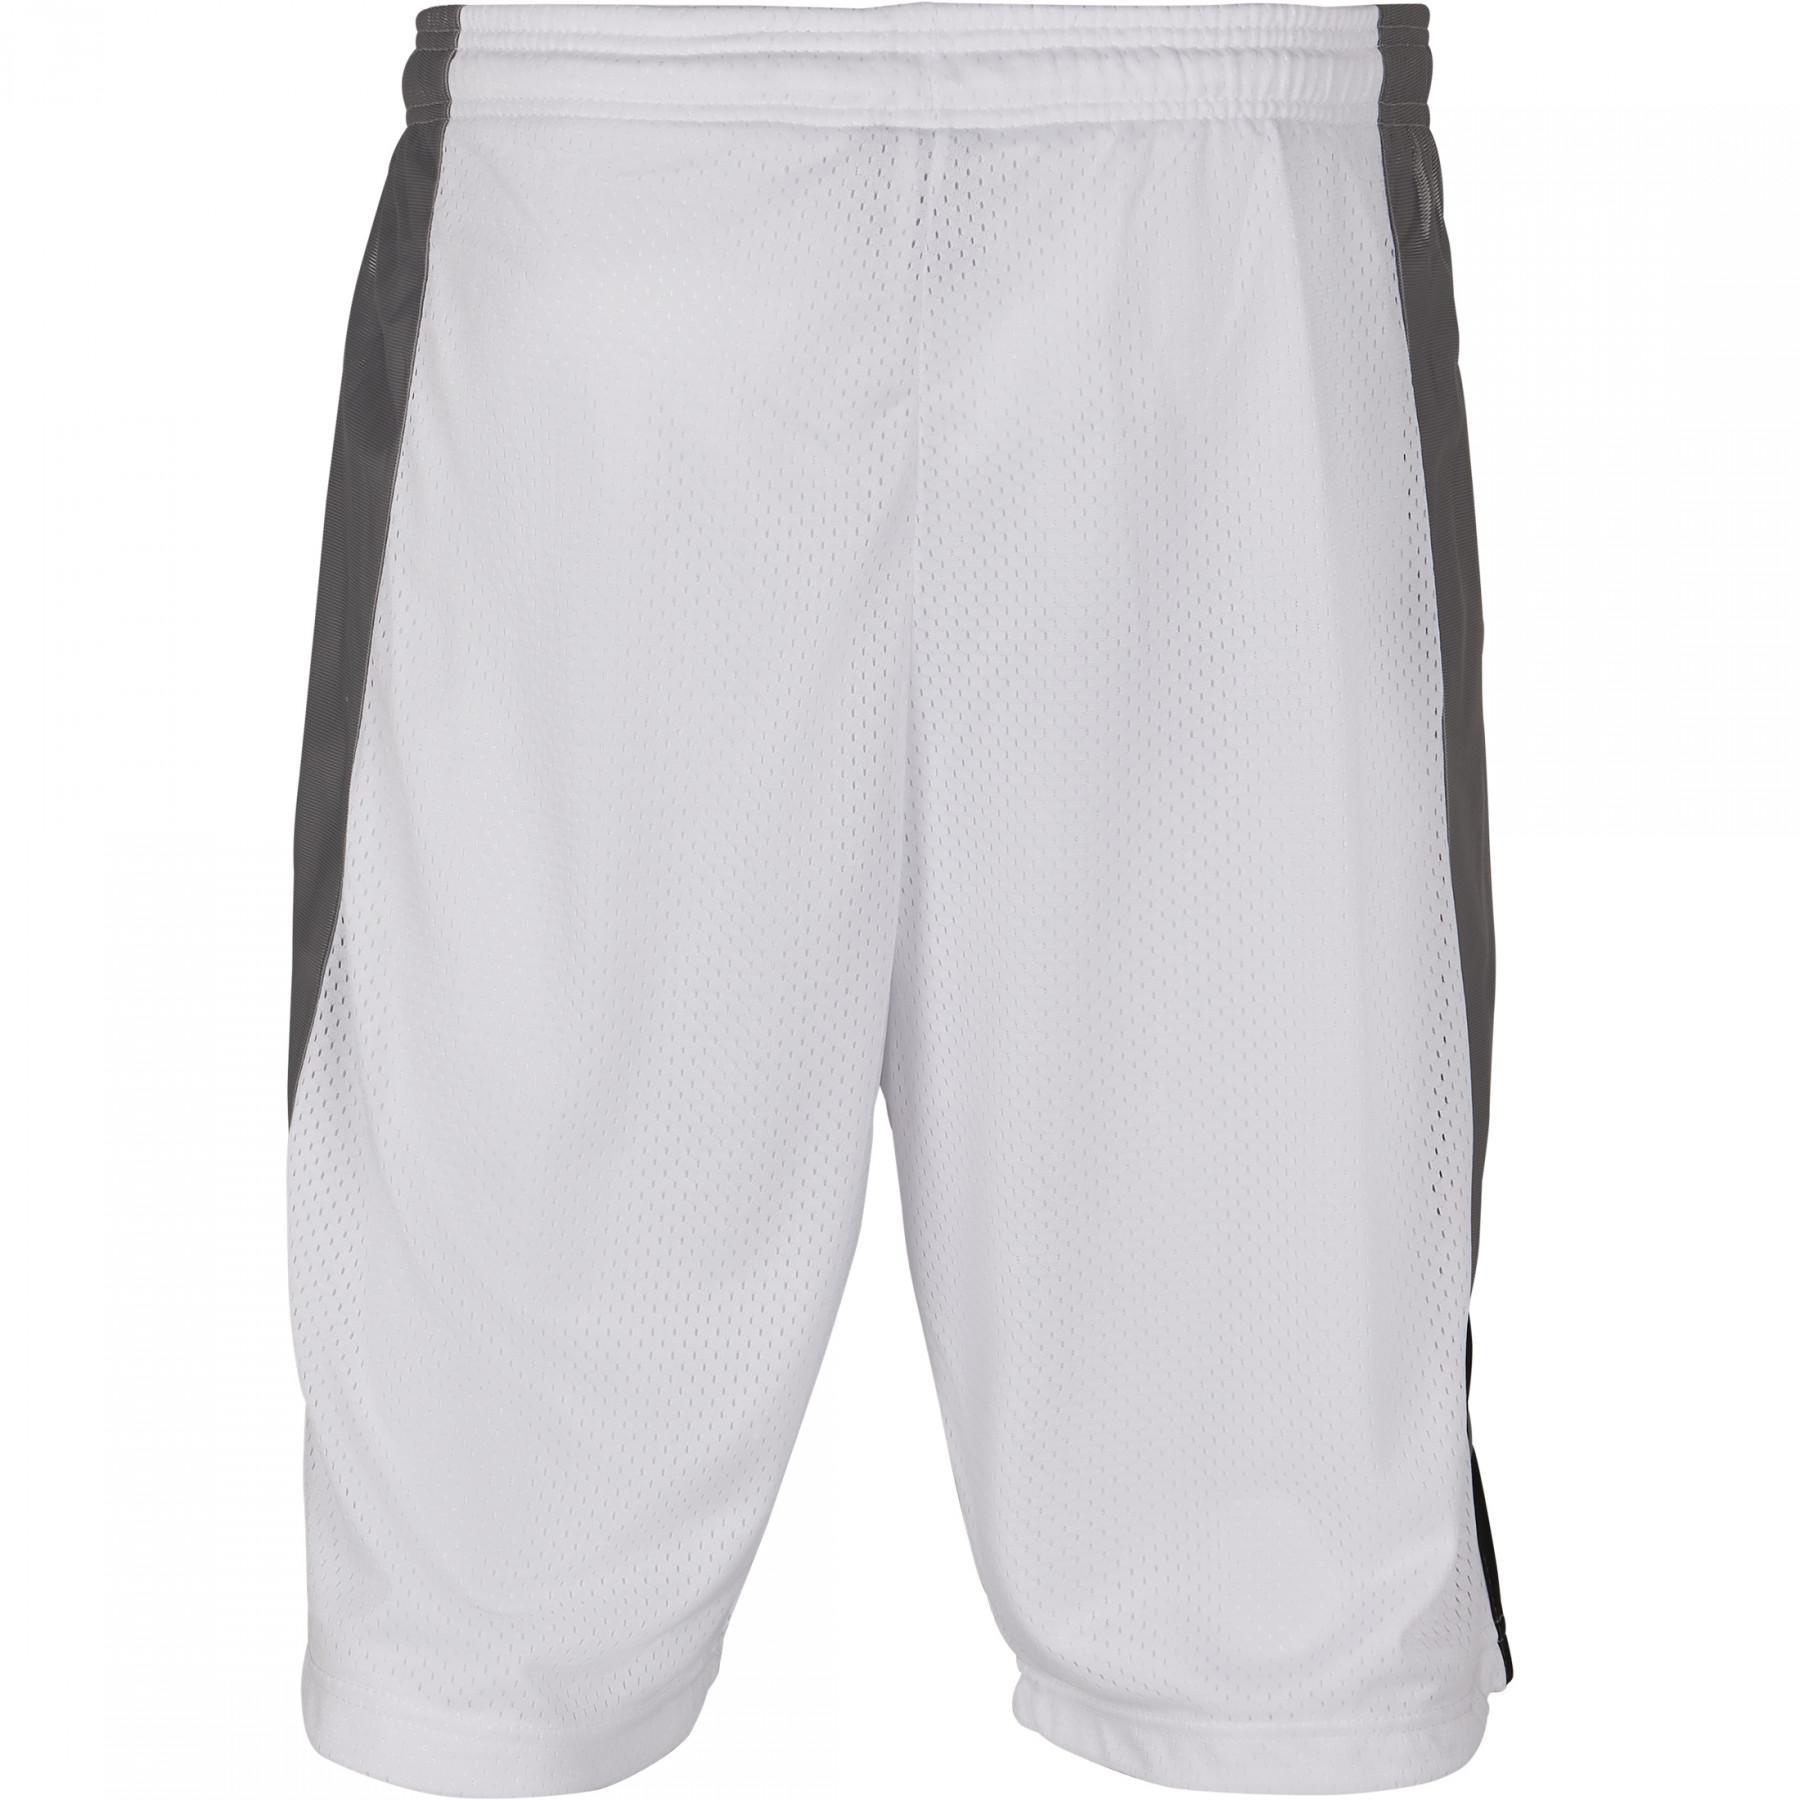 Pantalón corto Southpole basketball mesh